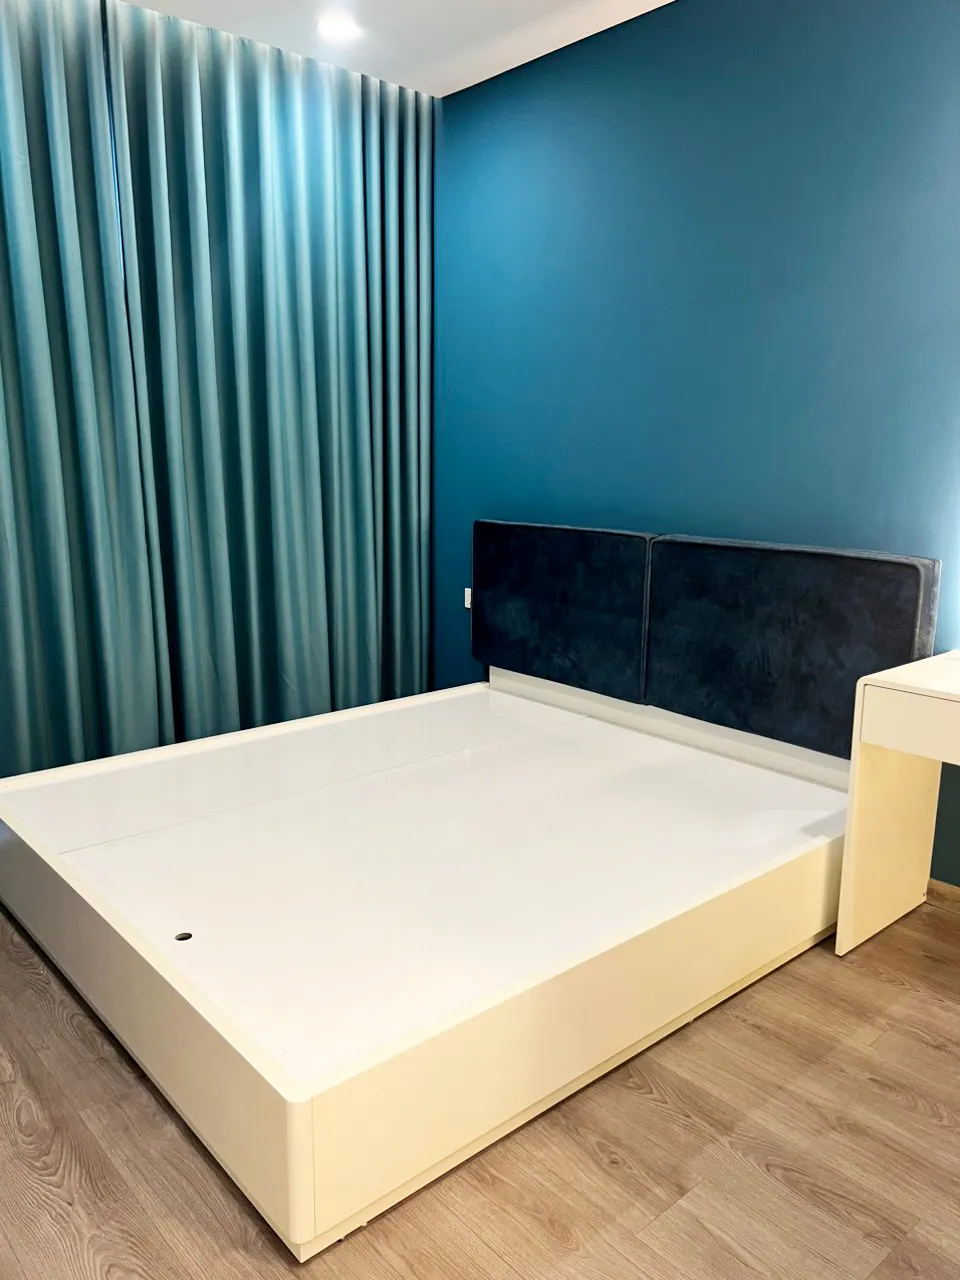 Hoàn thiện nội thất phòng ngủ Căn hộ chung cư Celadon Tân Phú 95m2 mang phong cách Color Block